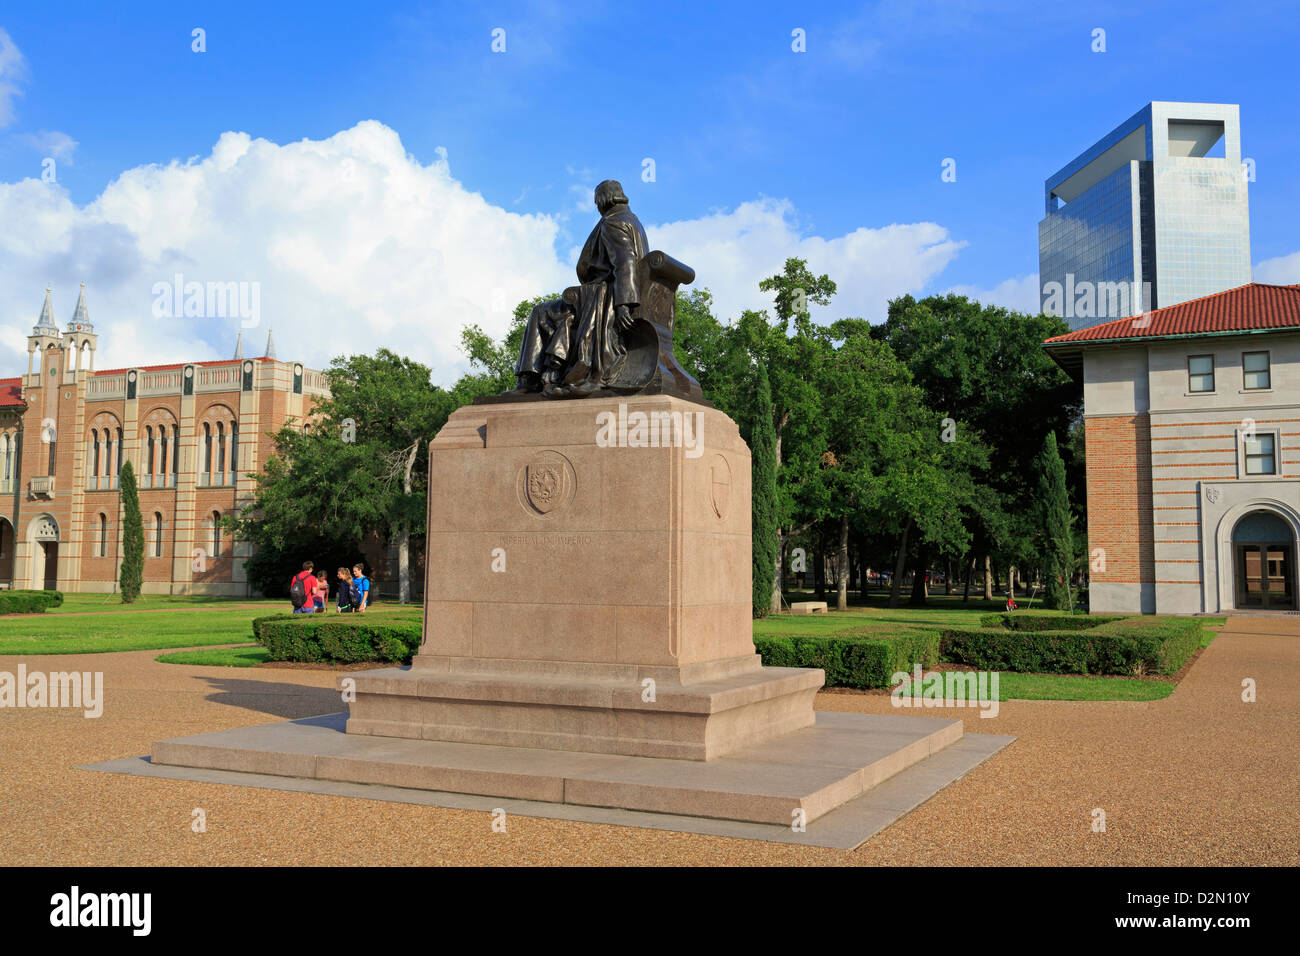 William Marsh Rice statue en l'Université Rice, Uptown District, Houston, Texas, États-Unis d'Amérique, Amérique du Nord Banque D'Images